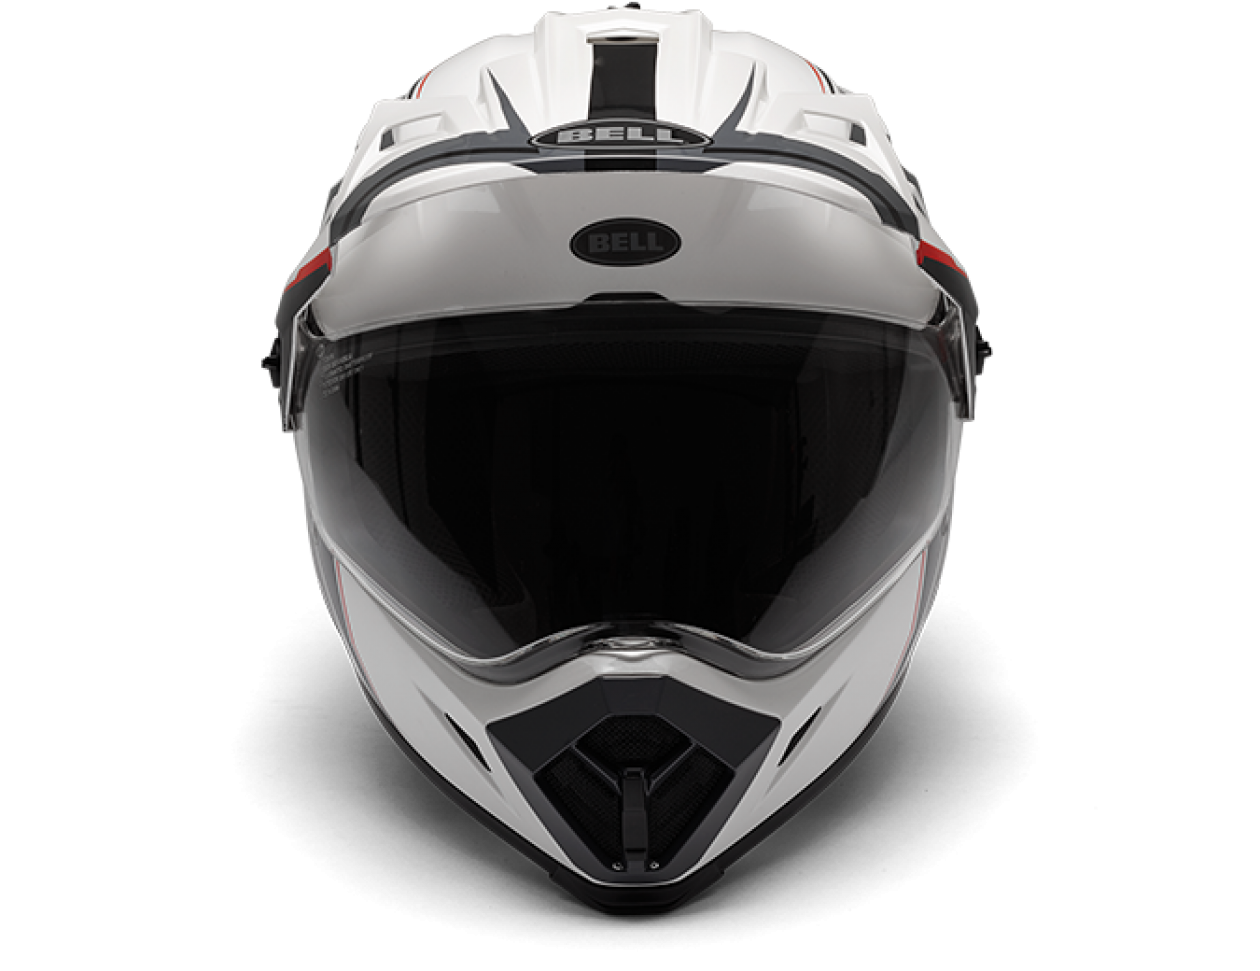 Helmet Motorcycle Helmet Png Image